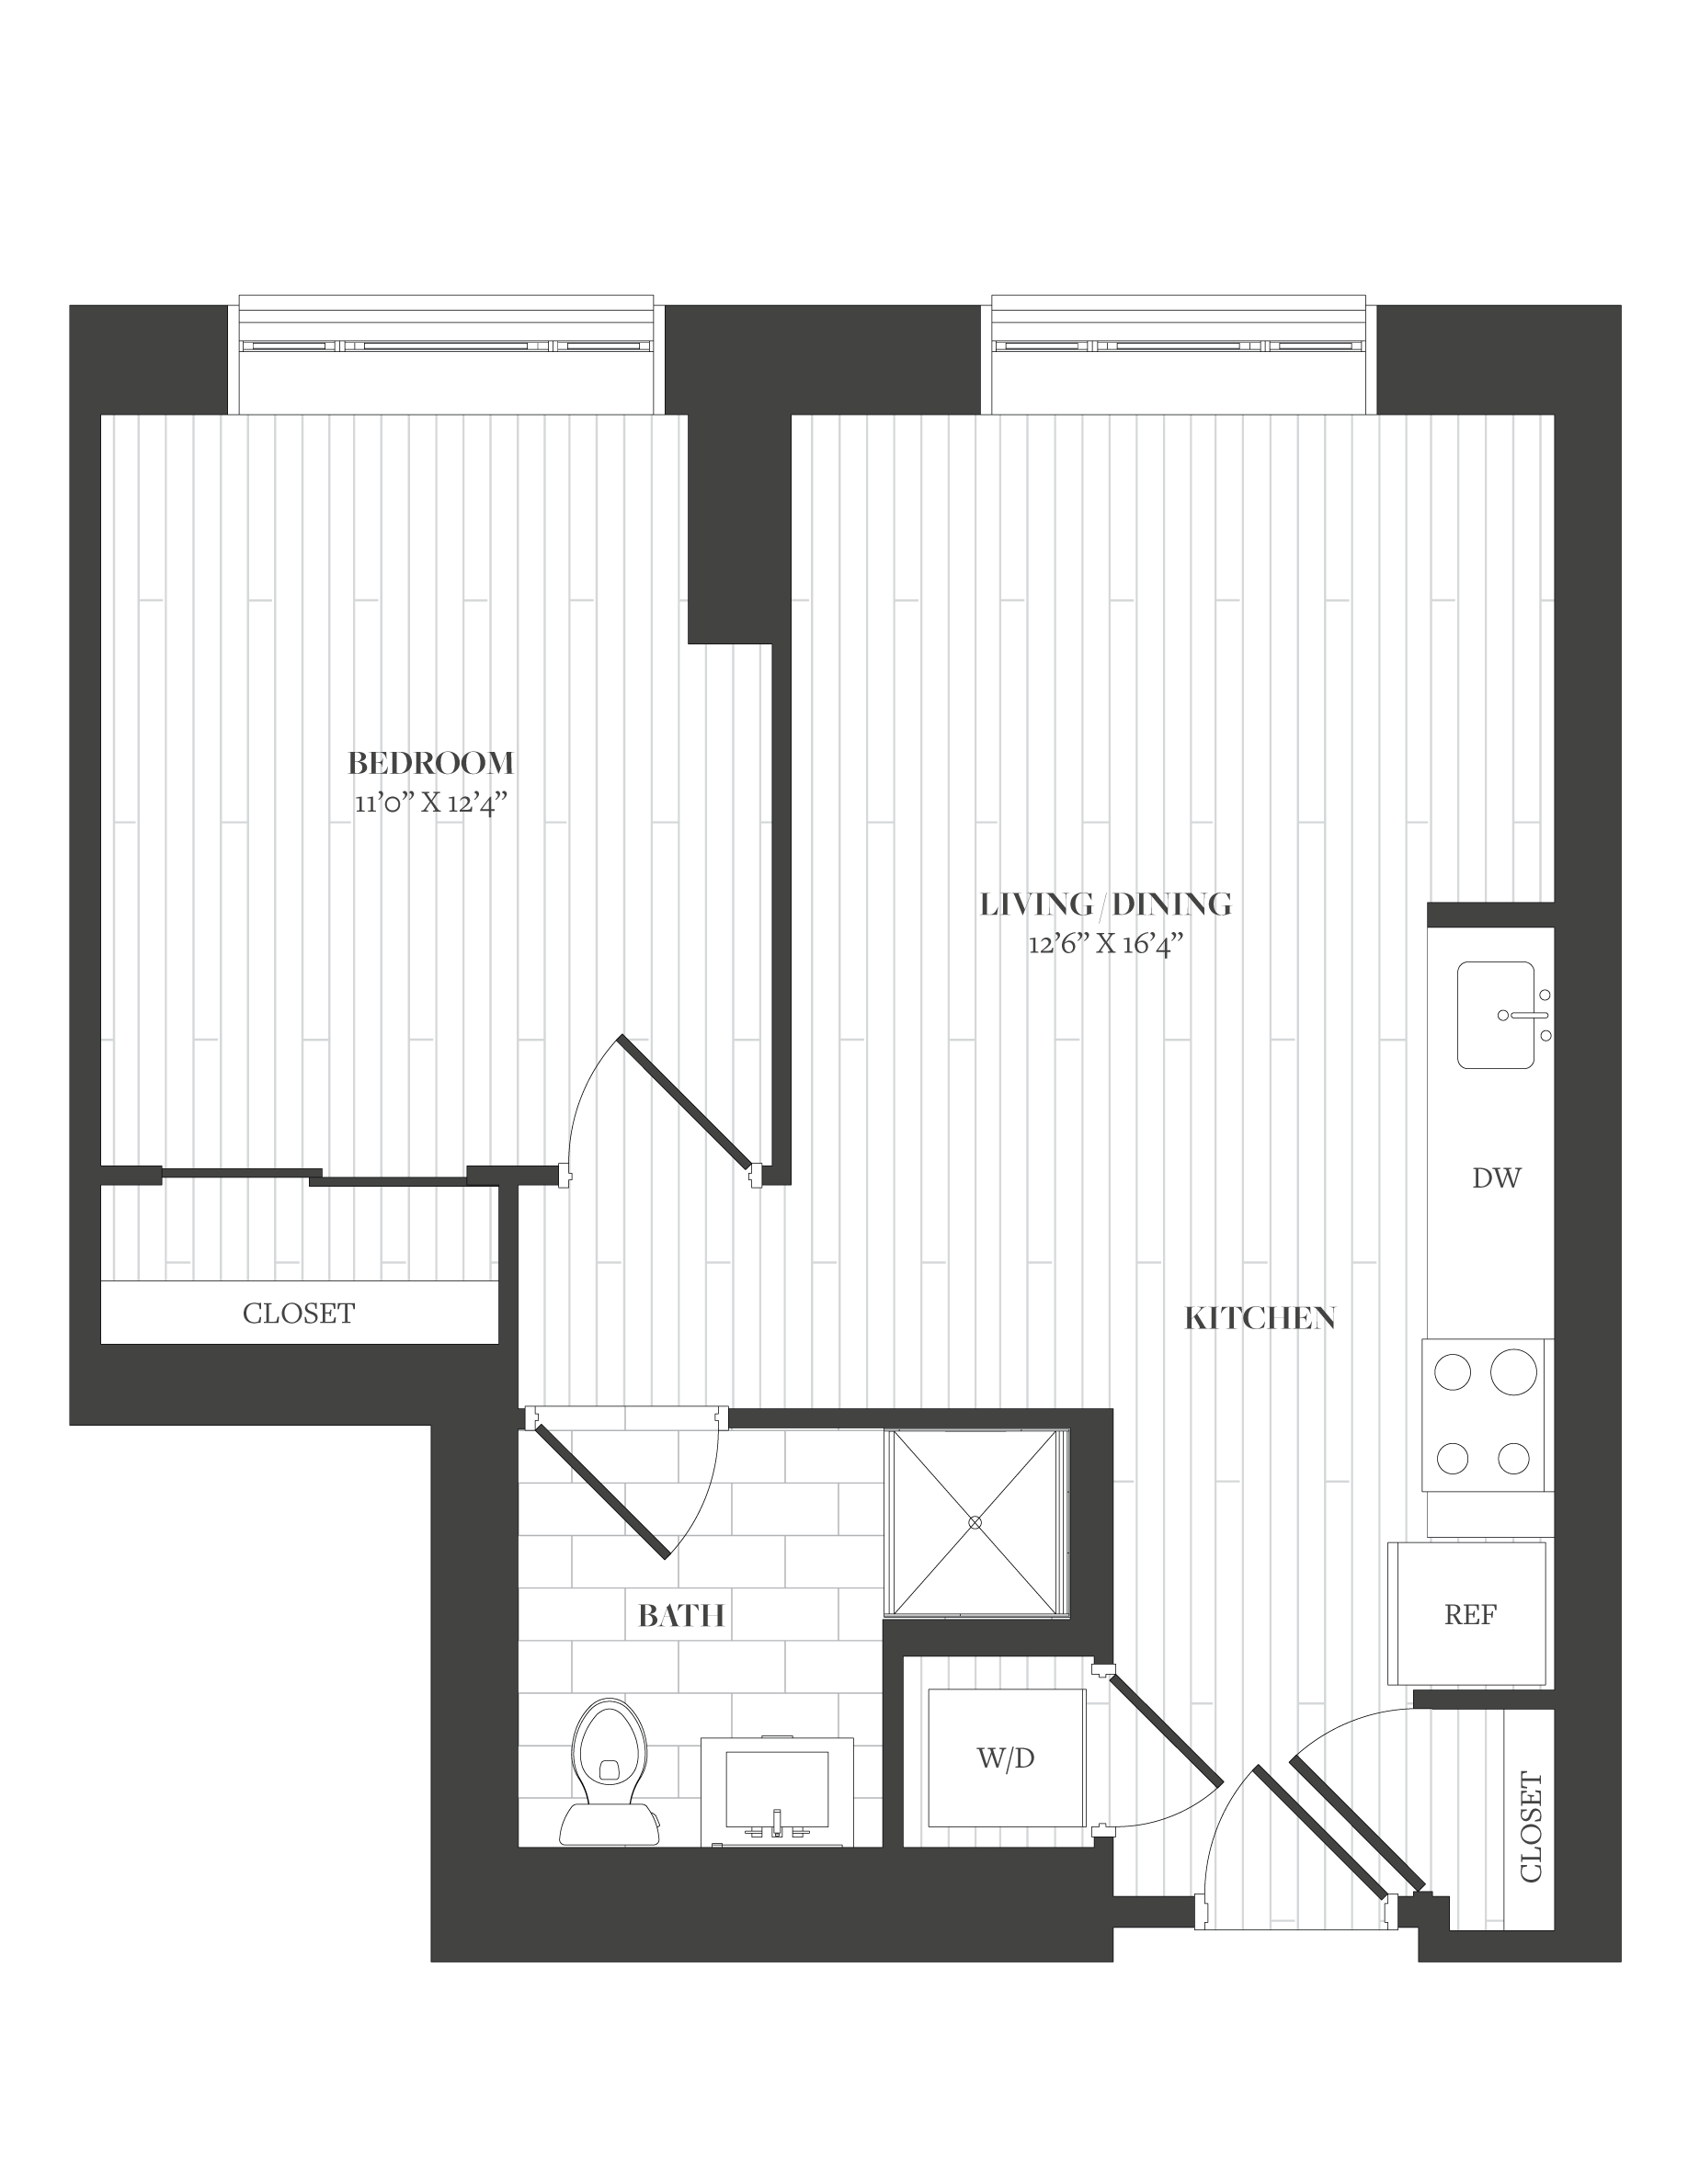 Floorplan image of unit 302